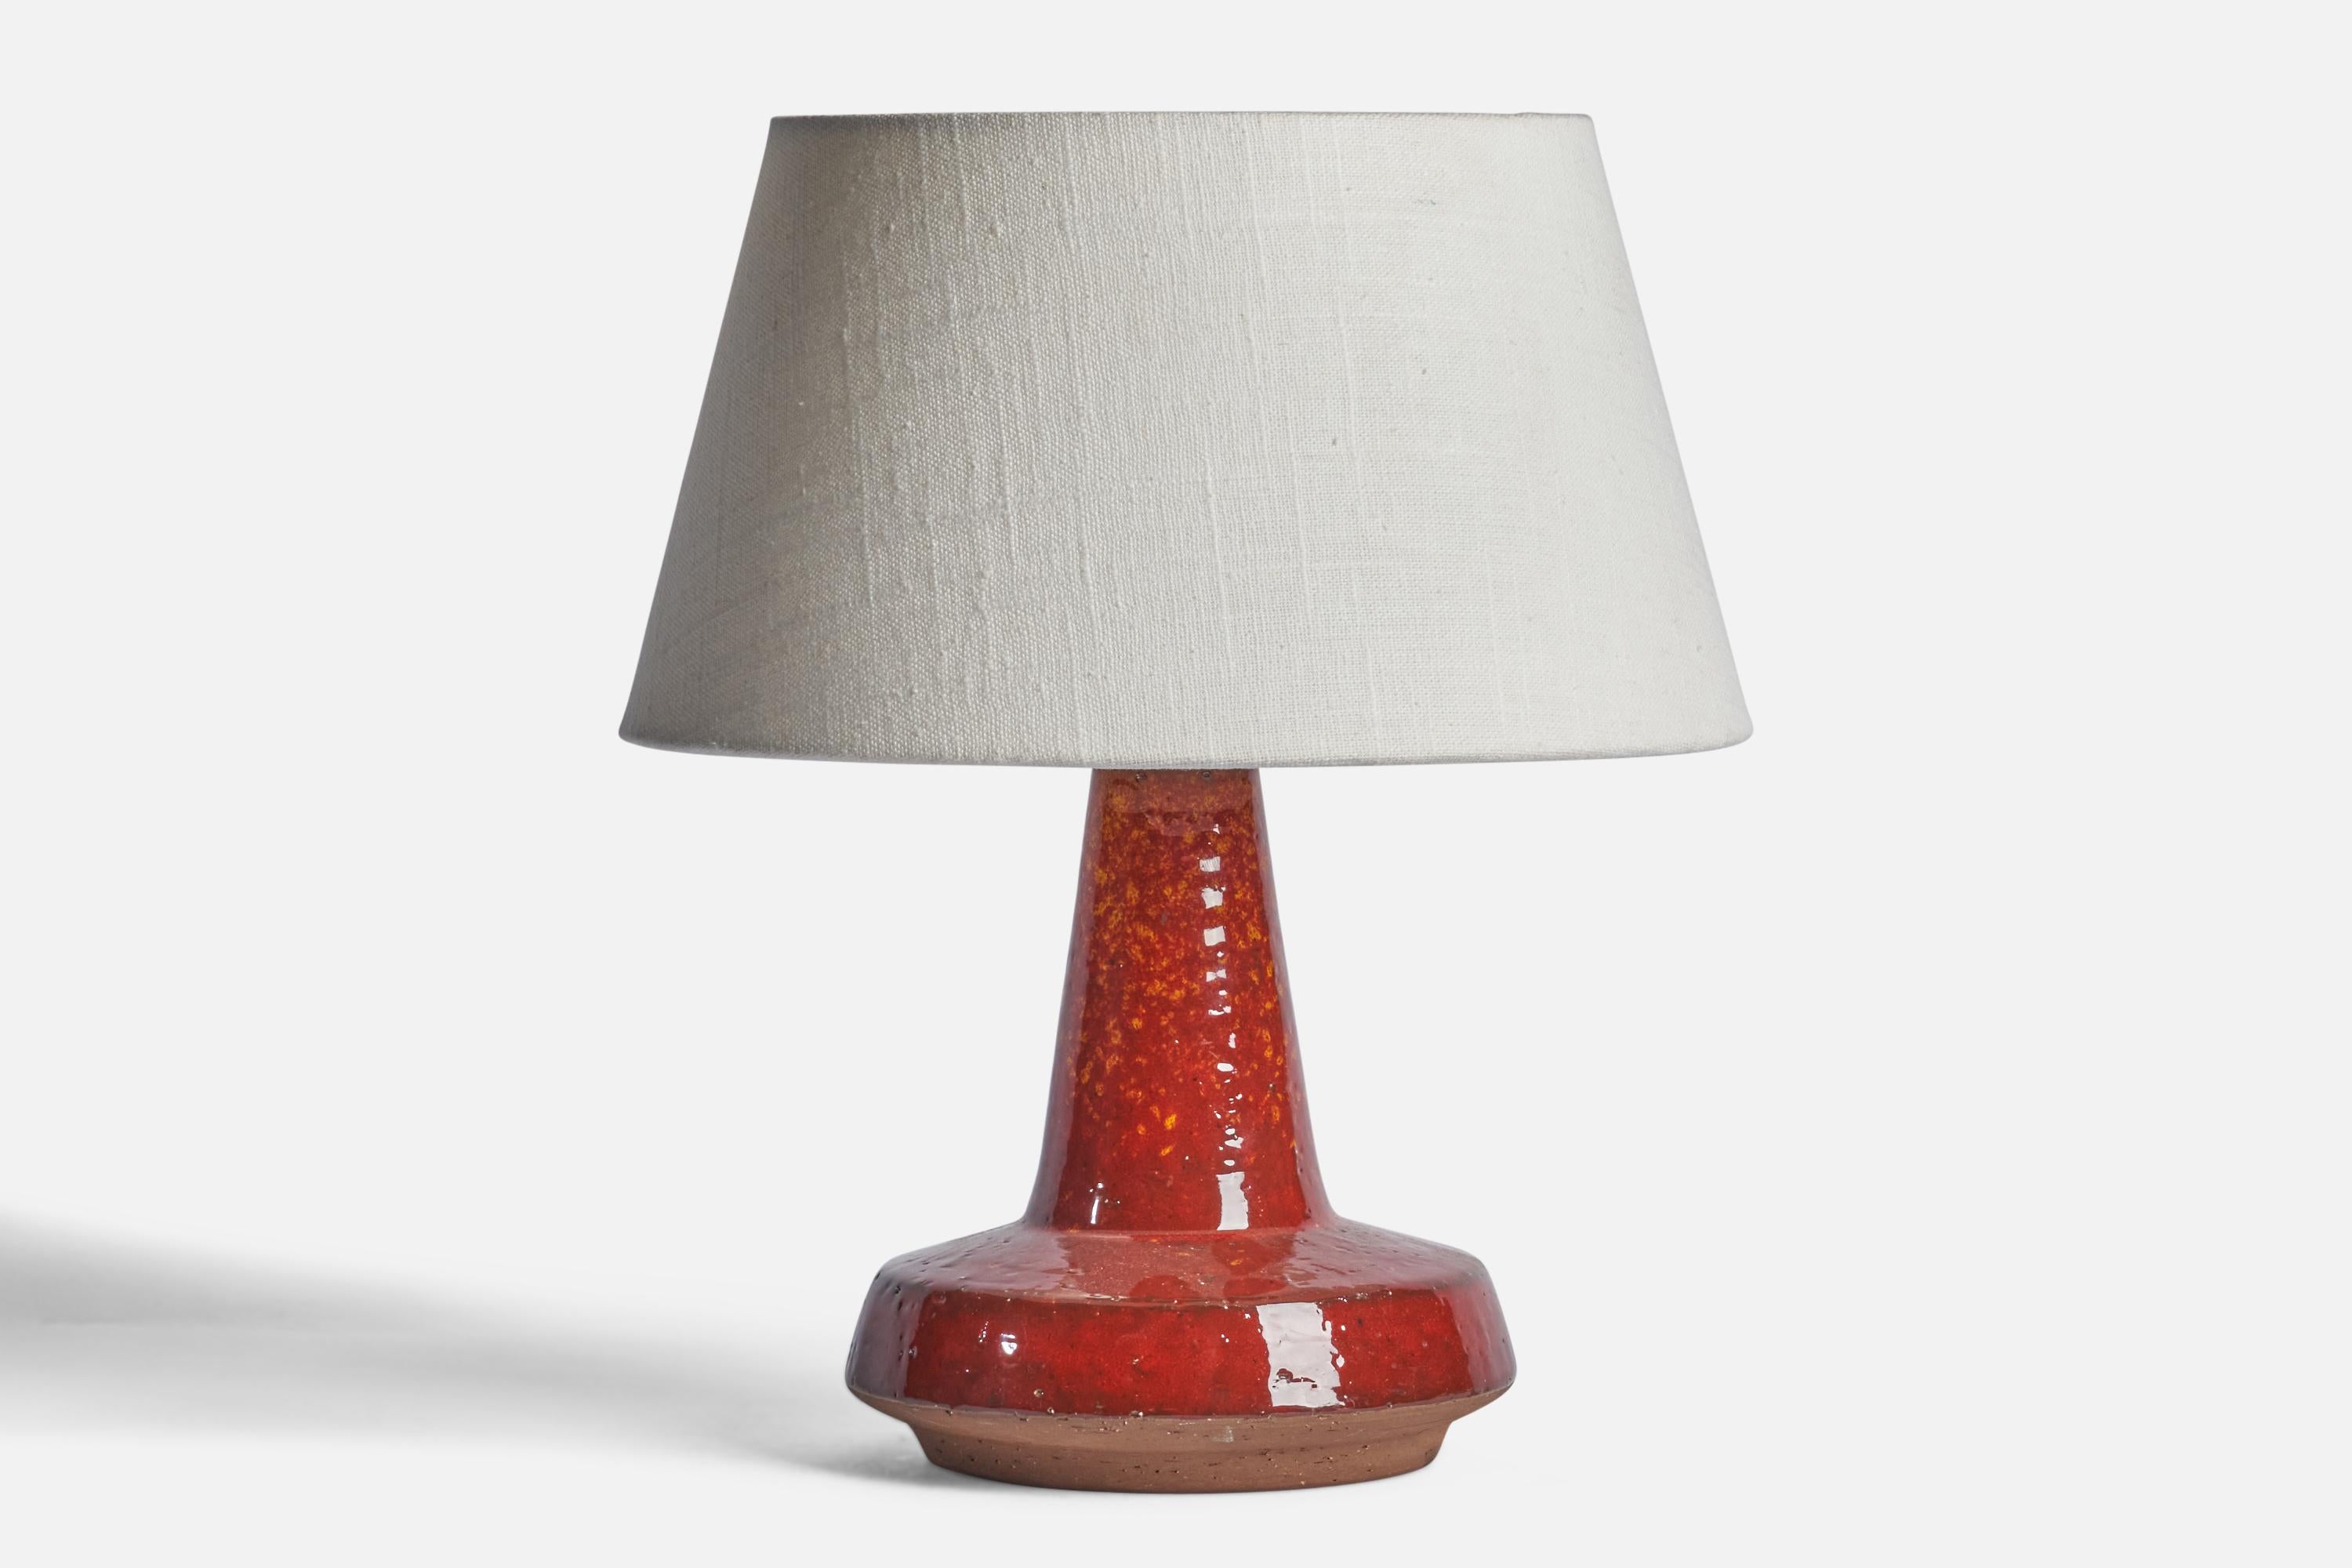 
Tischlampe aus rot glasiertem Steingut, entworfen und hergestellt von Michael Andersen, Bornholm, Dänemark, um 1960.
Abmessungen der Lampe (Zoll): 9